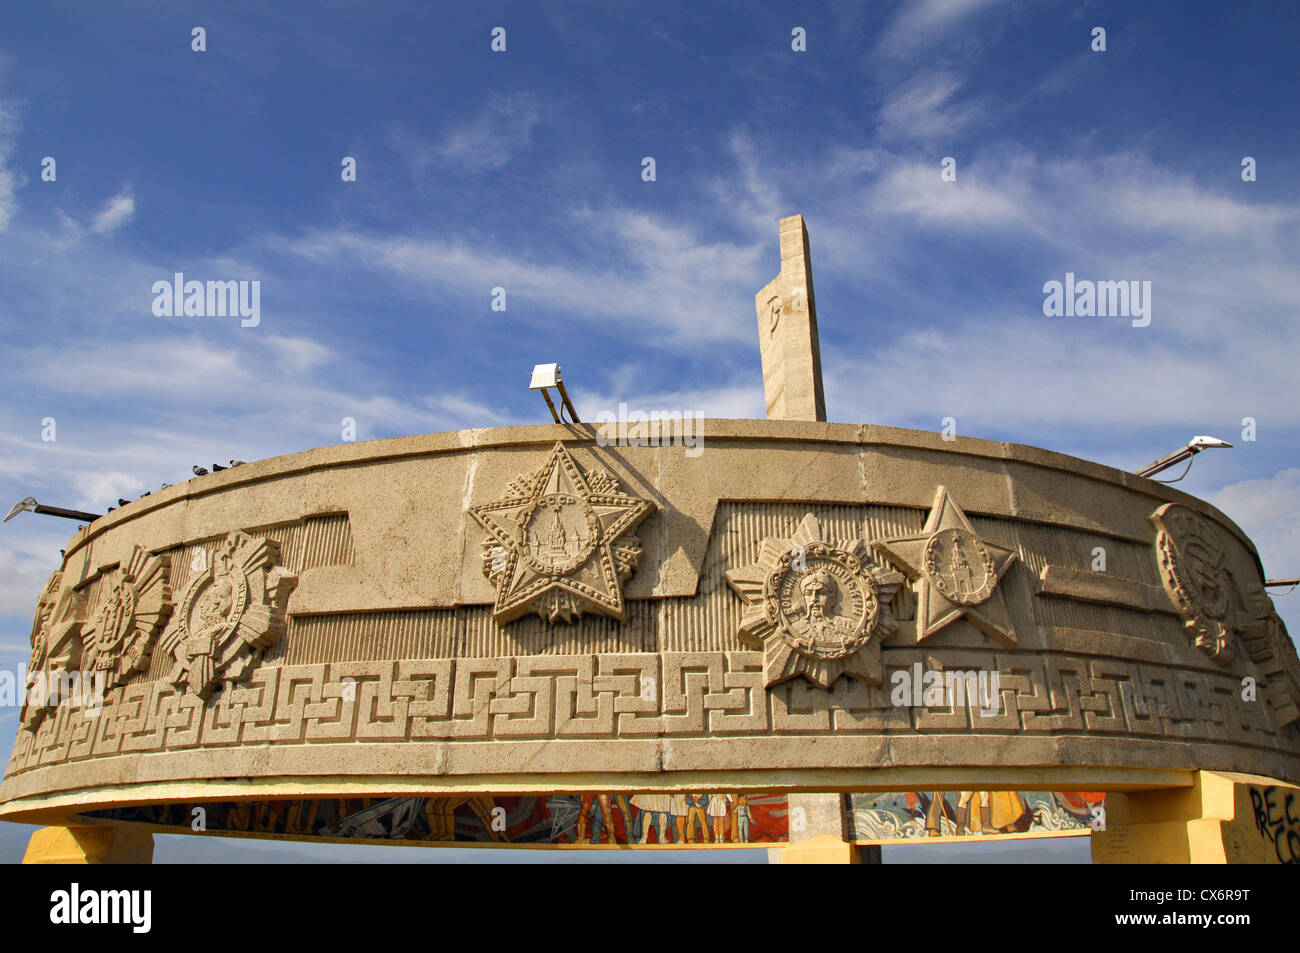 Soviet Monument in Ulaanbaatar, Mongolia Stock Photo